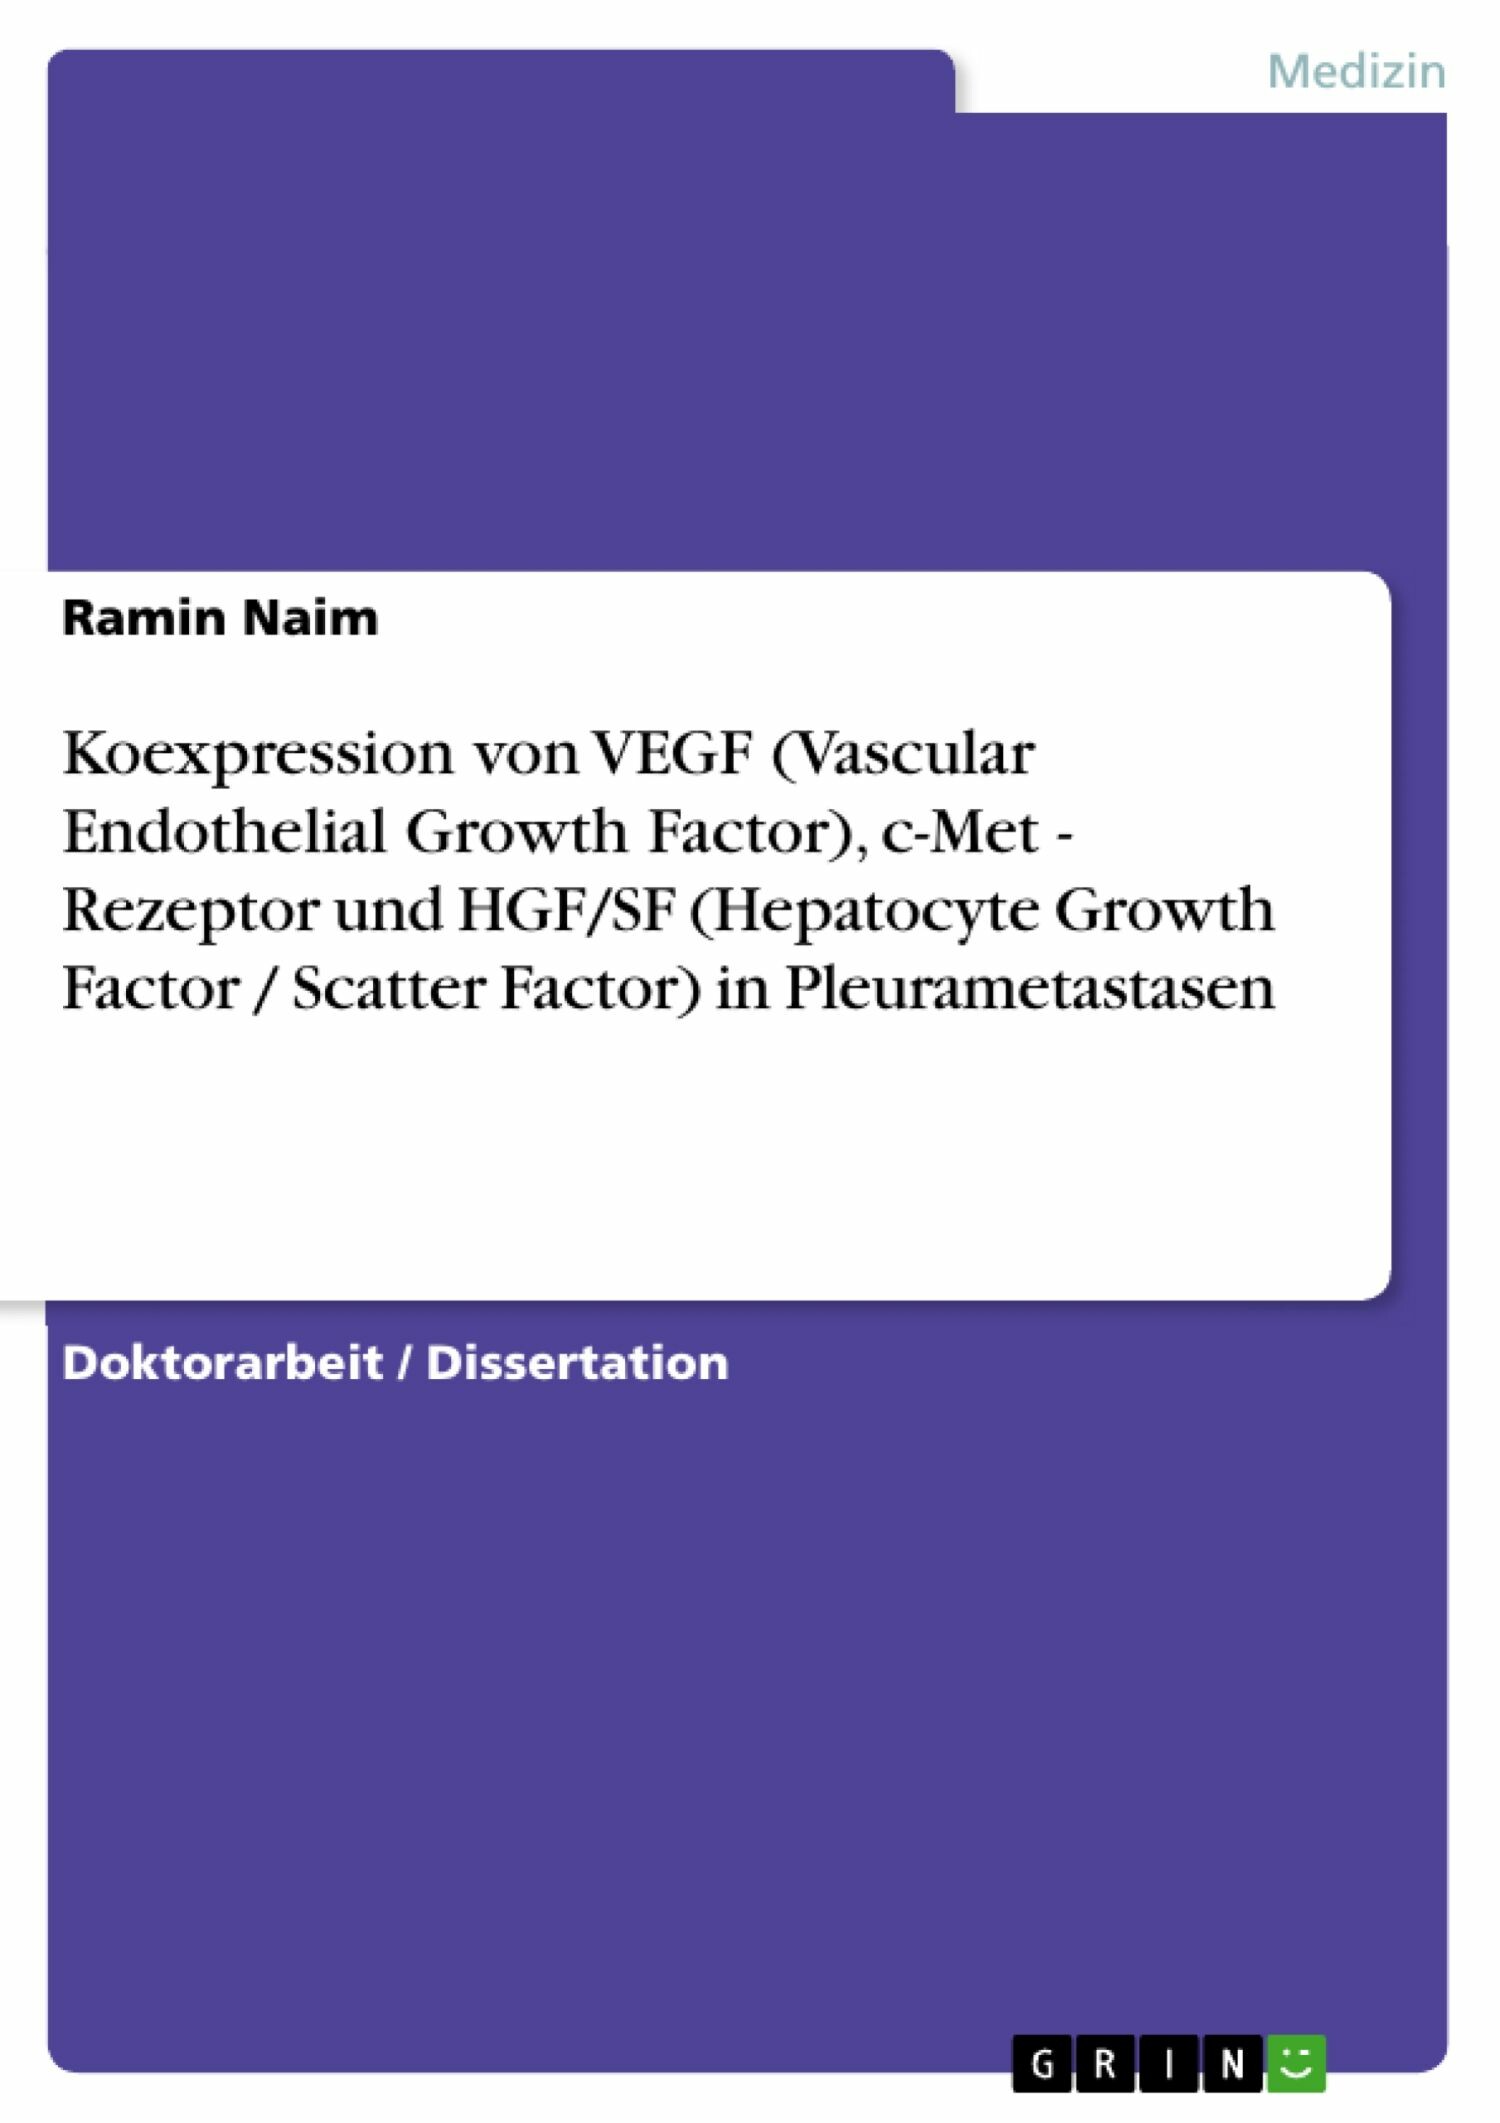 Koexpression von VEGF (Vascular Endothelial Growth Factor), c-Met - Rezeptor und HGF/SF (Hepatocyte Growth Factor / Scatter Factor) in Pleurametastasen